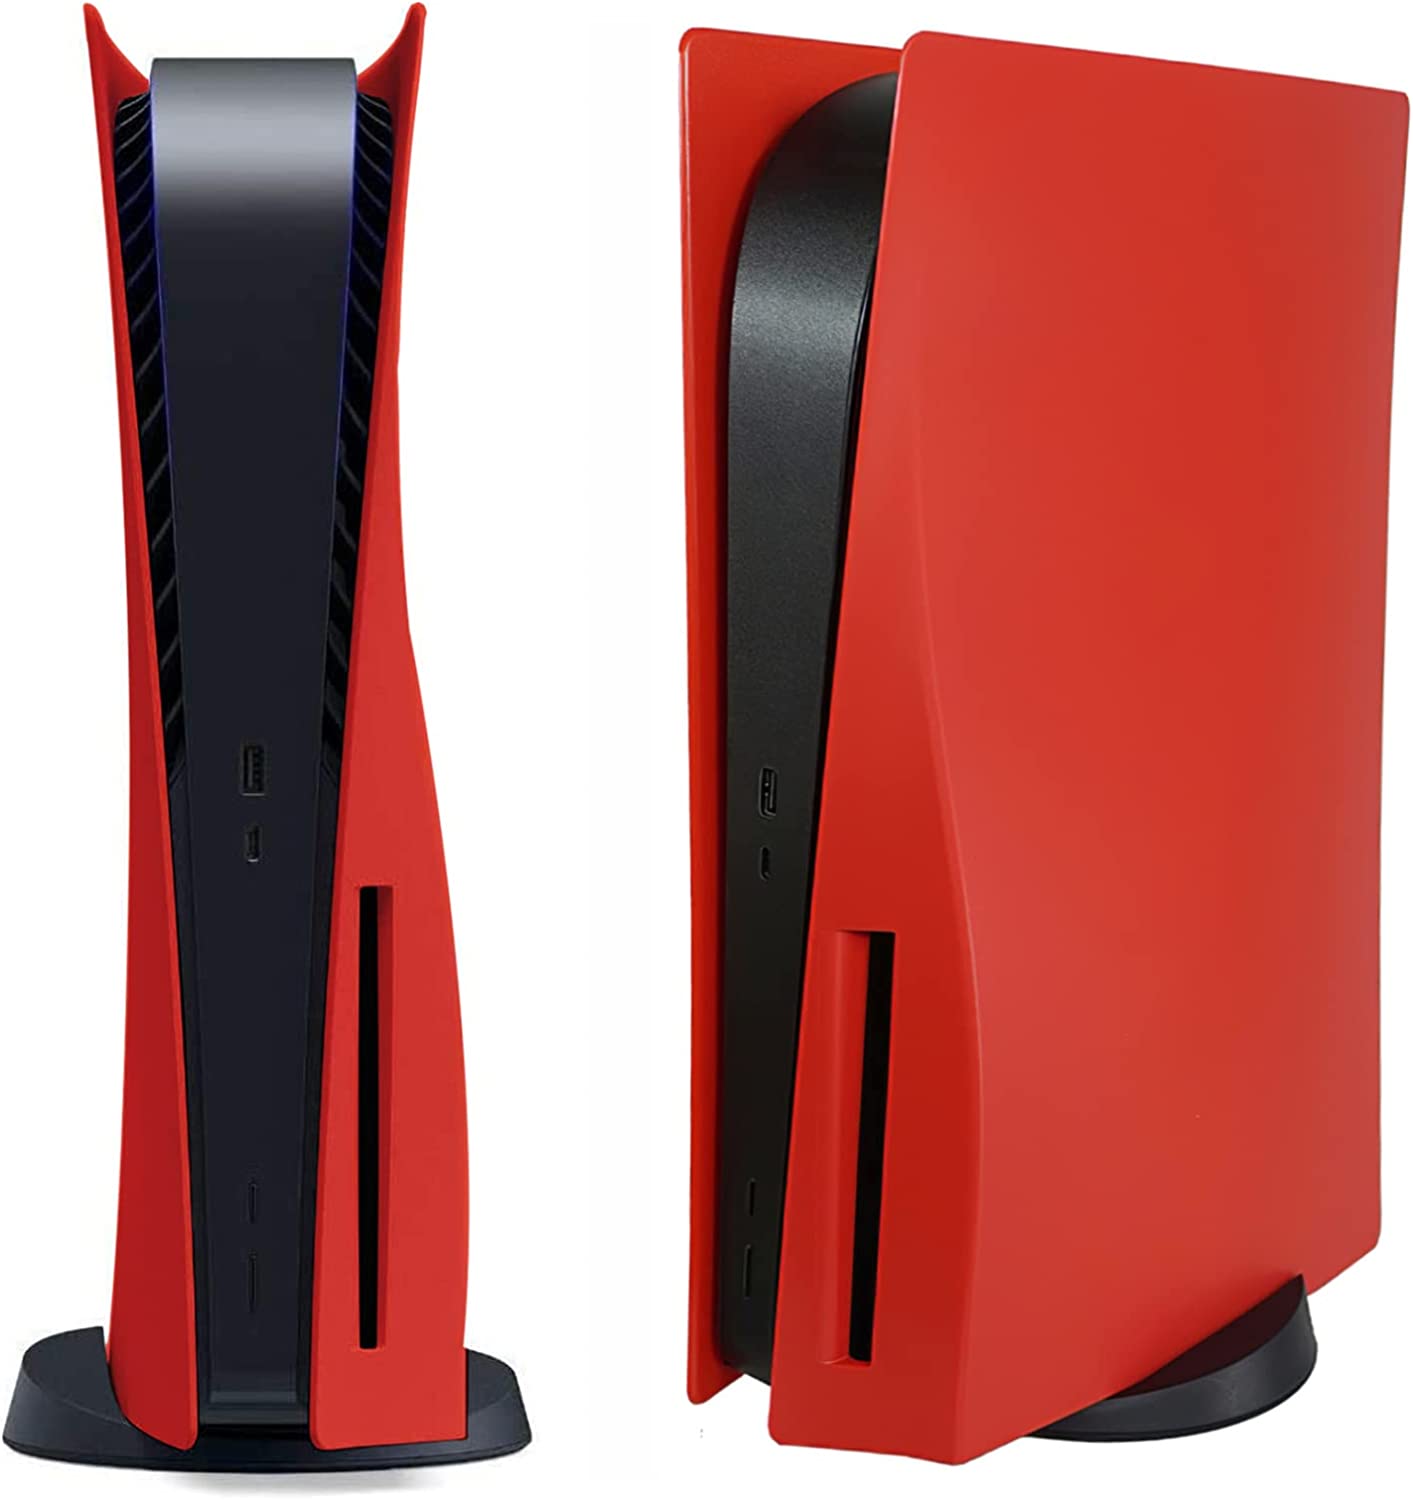 PS5 カバー プレイステーション5 フェイスプレート 本体 Play Station 5 通常版 デジタルエディション PlayStation5  周辺機器 純正コントローラーとの色合わせ